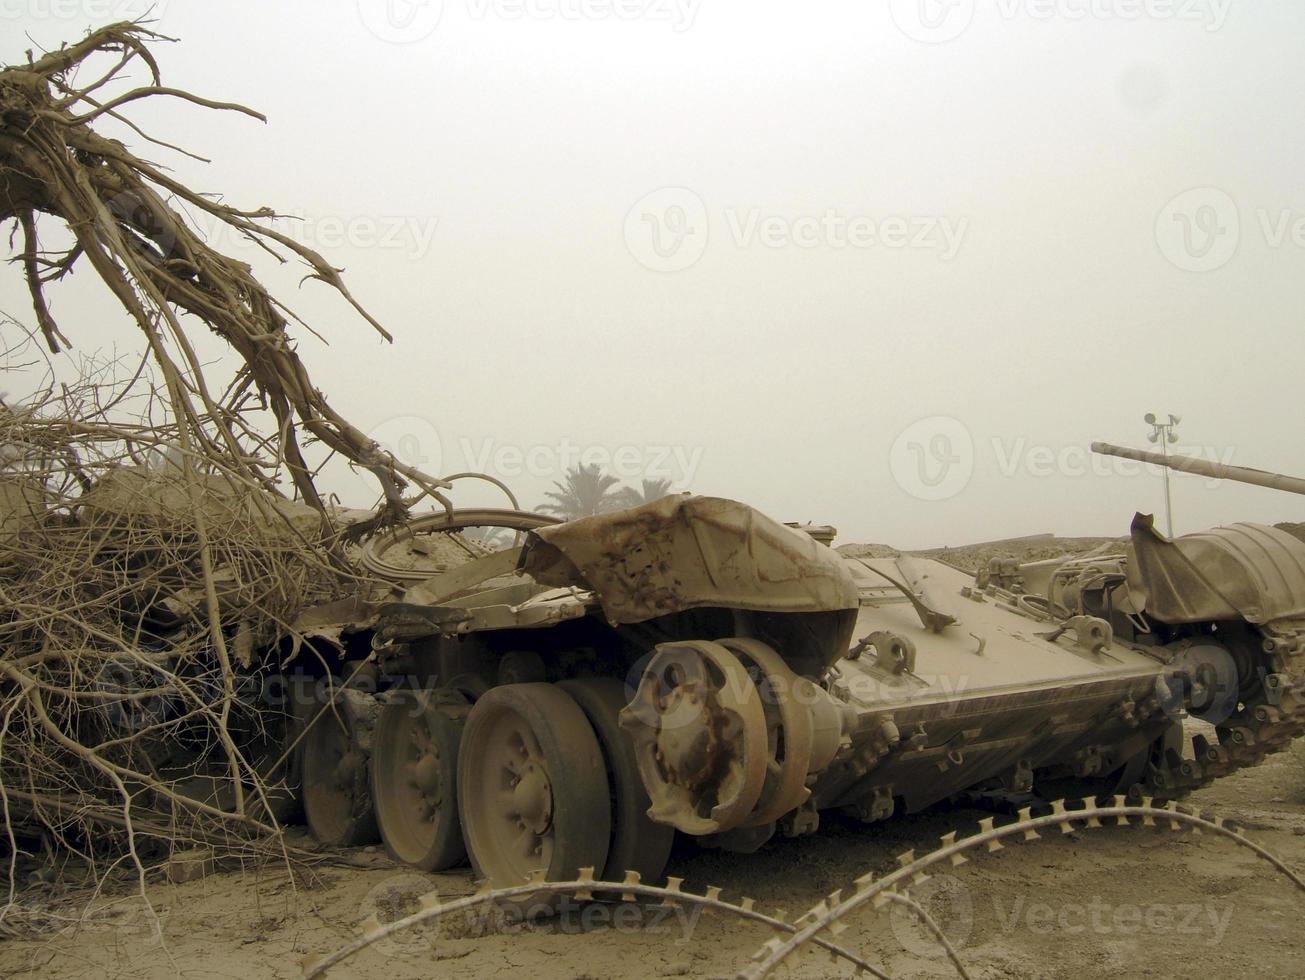 militär armé fordon tank på spår med pipa efter segerrika kriget foto